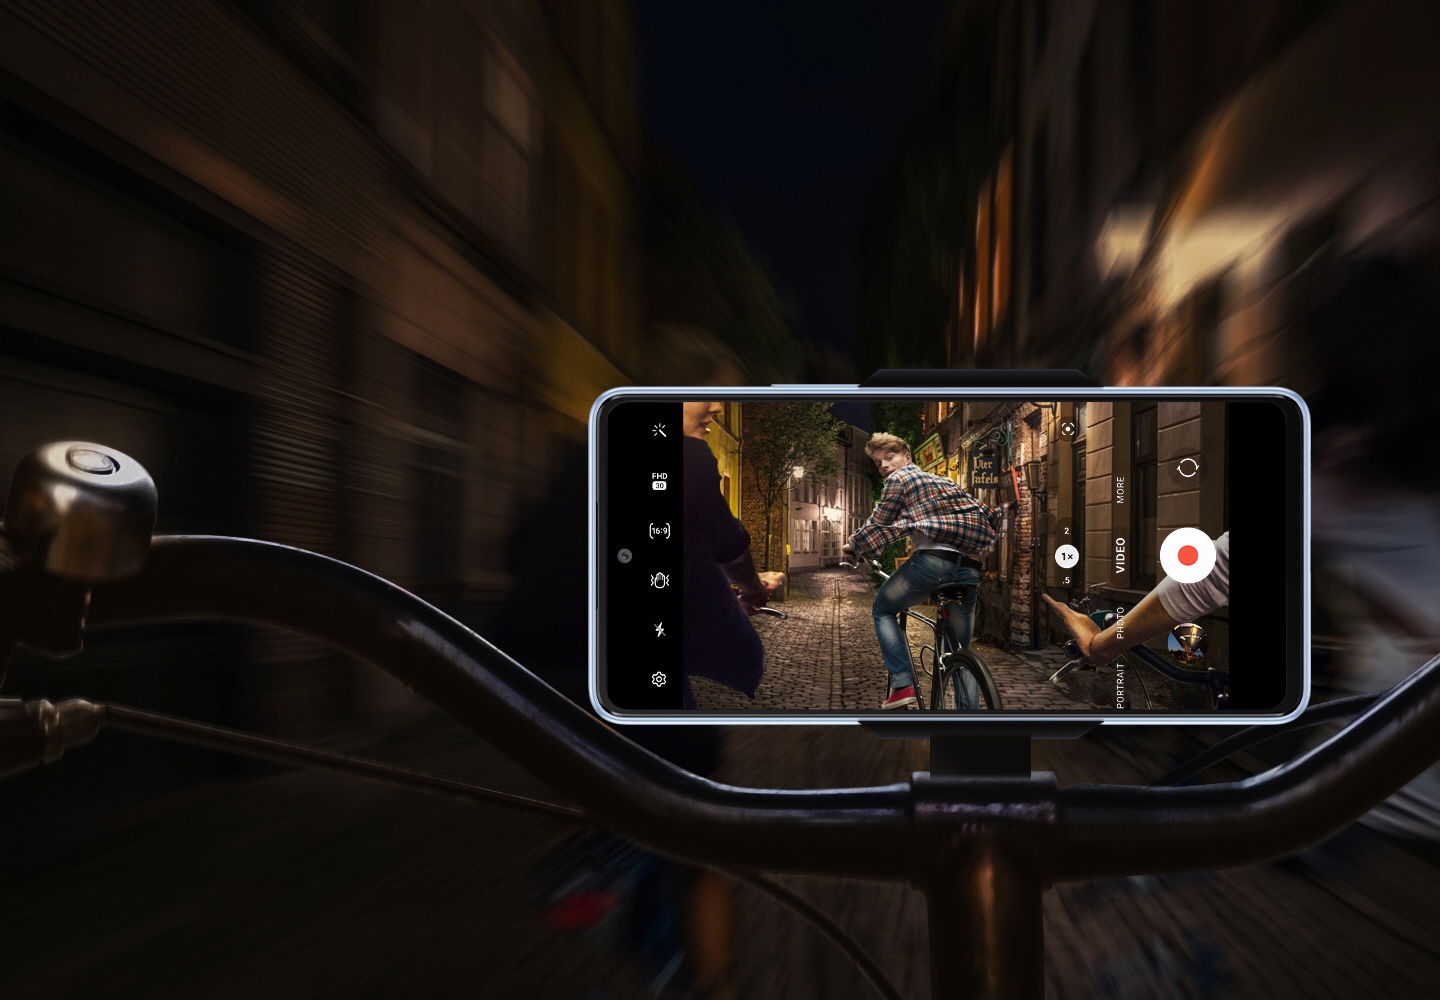 Frontalansicht eines Galaxy A53 5G, das waagerecht an einem Fahrradlenker befestigt ist. Während der Hintergrund unscharf und dunkel ist, zeigt das Smartphone-Display, dass es das Geschehen klar und stabil aufzeichnet: Eine Gruppe von Fahrradfahrern fährt nachts durch eine schwach beleuchtete Straße, wobei der Fahrer, der am weitesten vorne sitzt, auf das Smartphone schaut. 